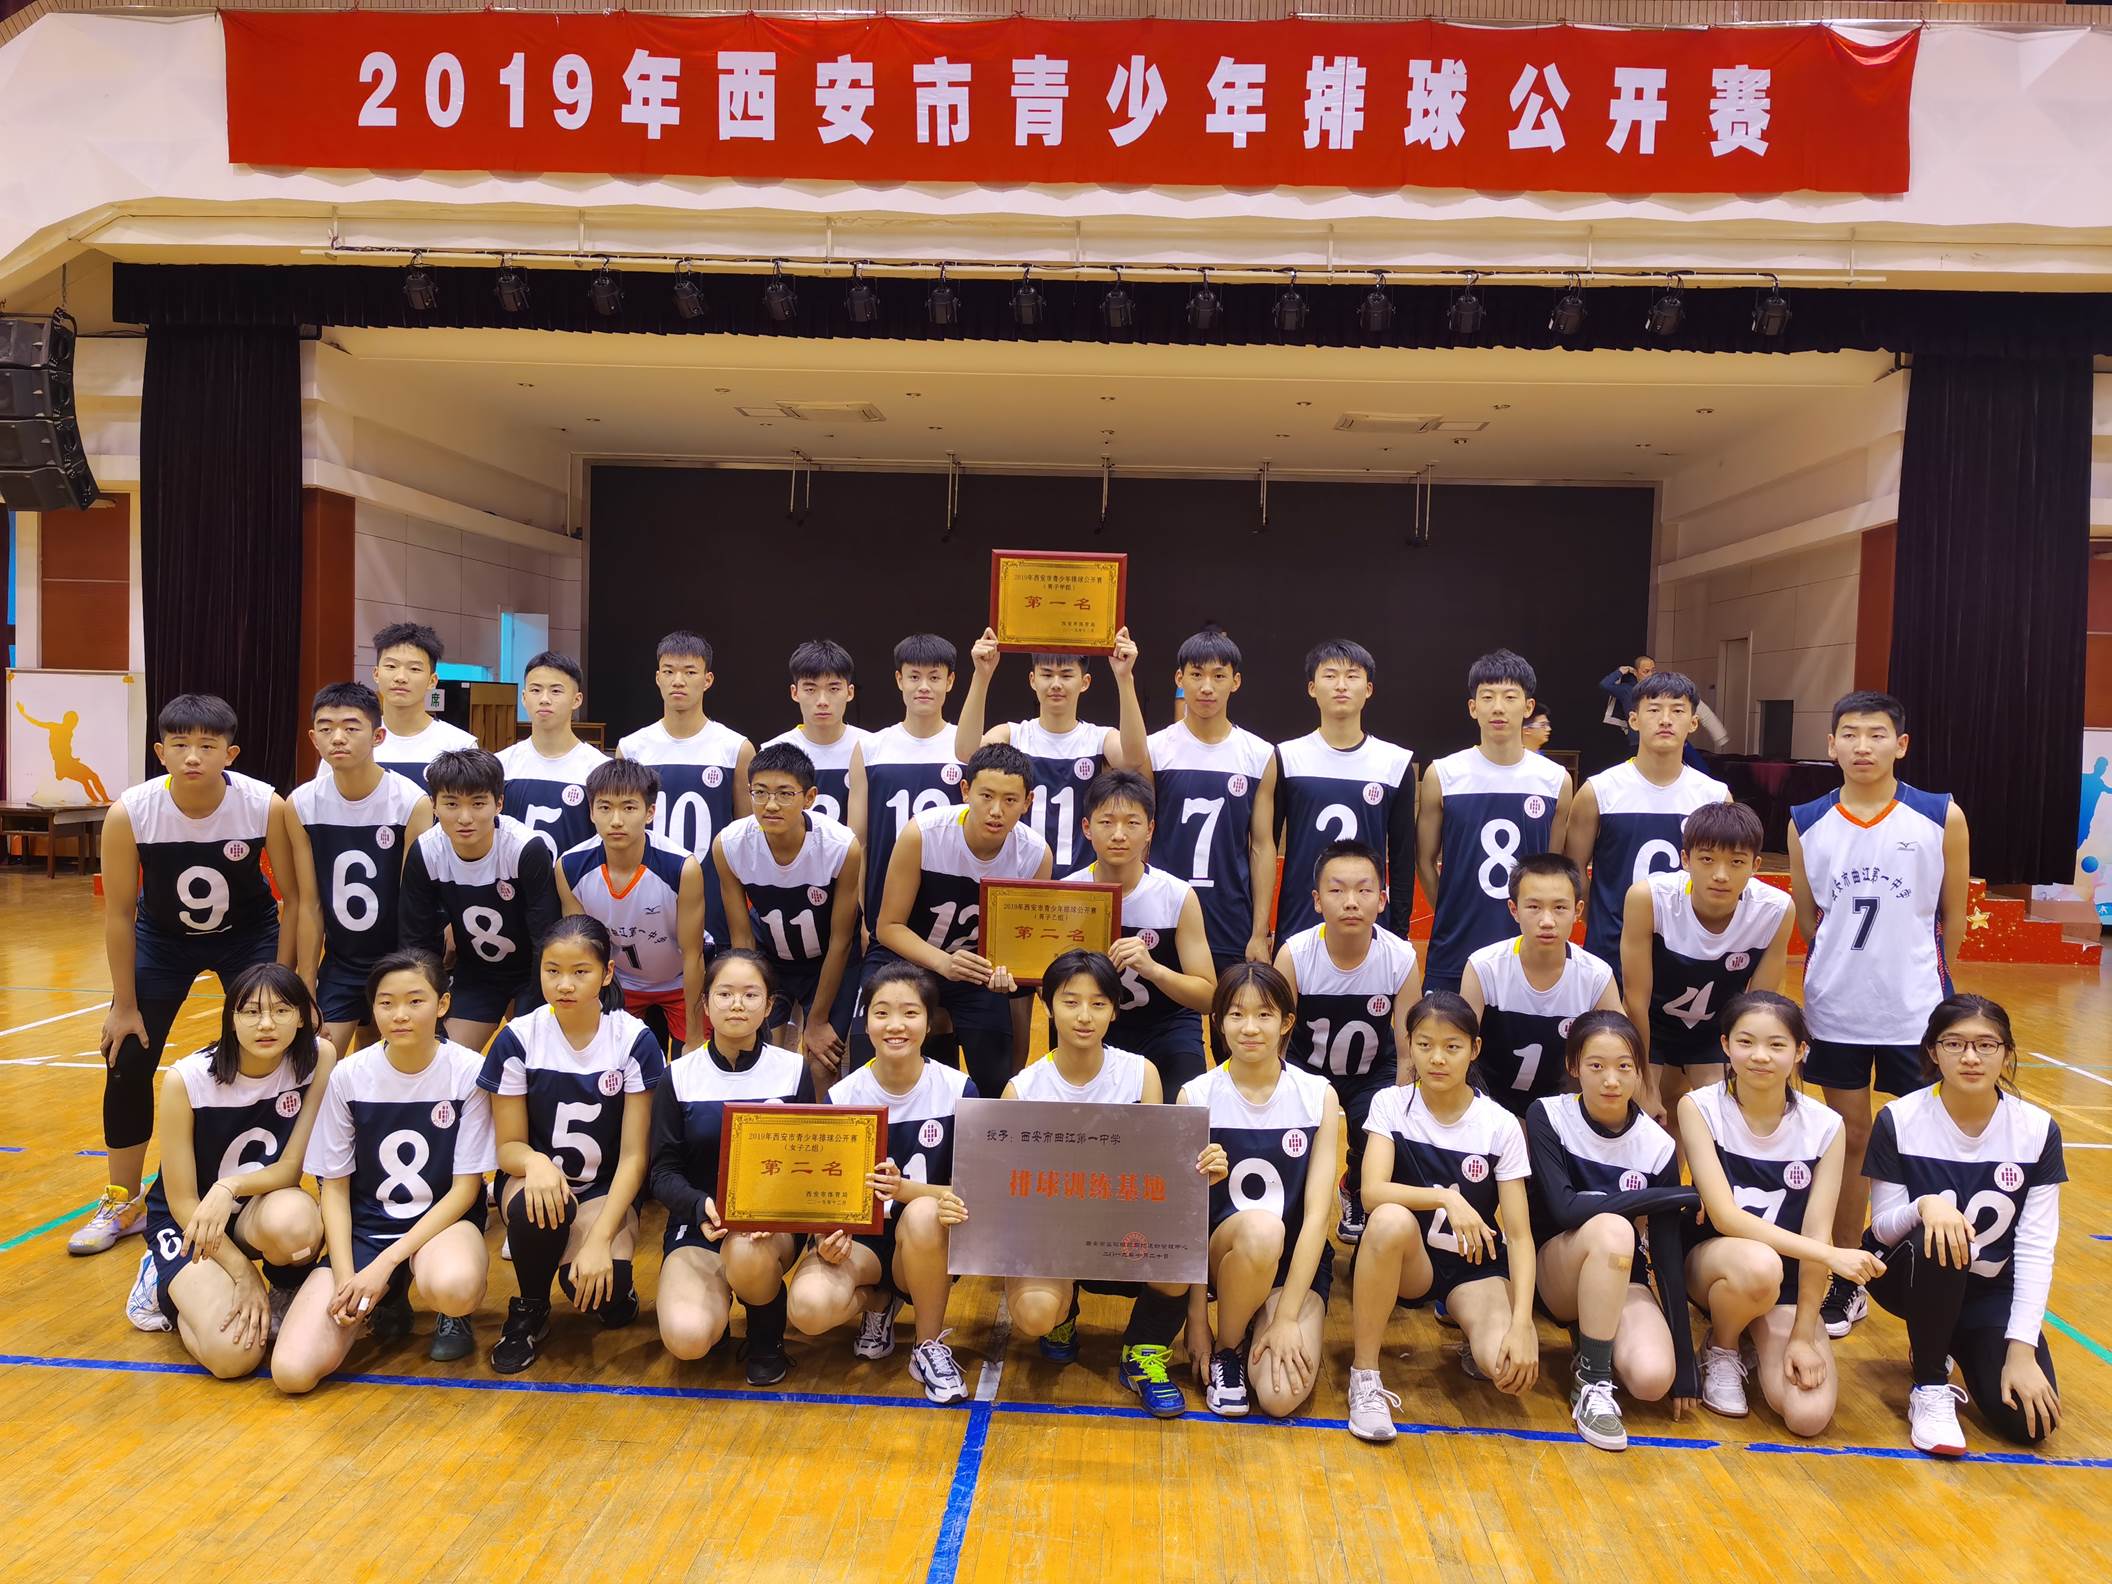 西安市曲江第一中学排球队在2019年西安市青少年排球公开赛中斩获佳绩